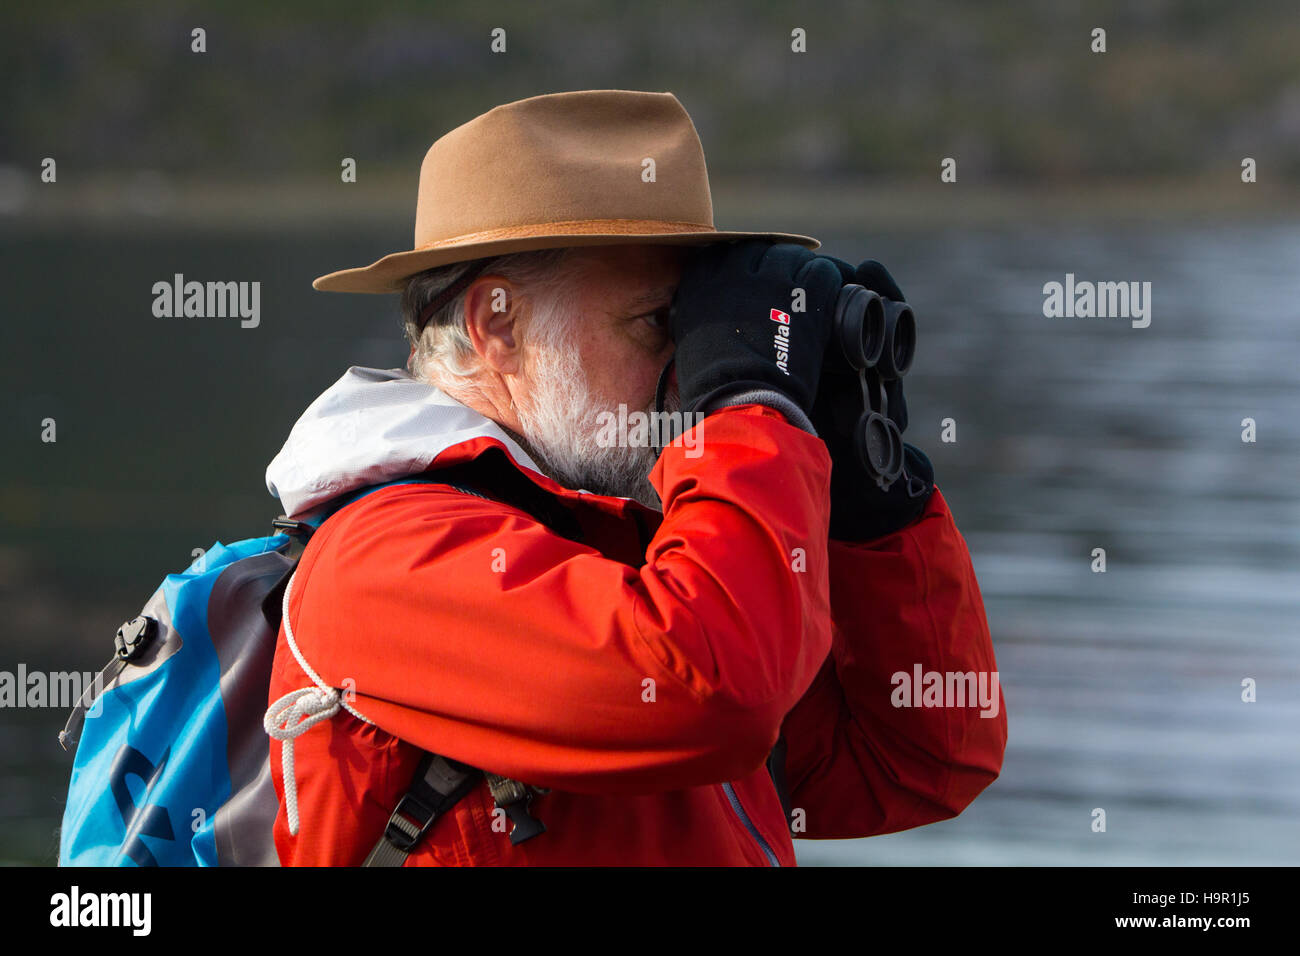 Ein Natur-Touristen auf der Suche durch sein Fernglas Vögel tragen einen hellen roten Mantel Stockfoto